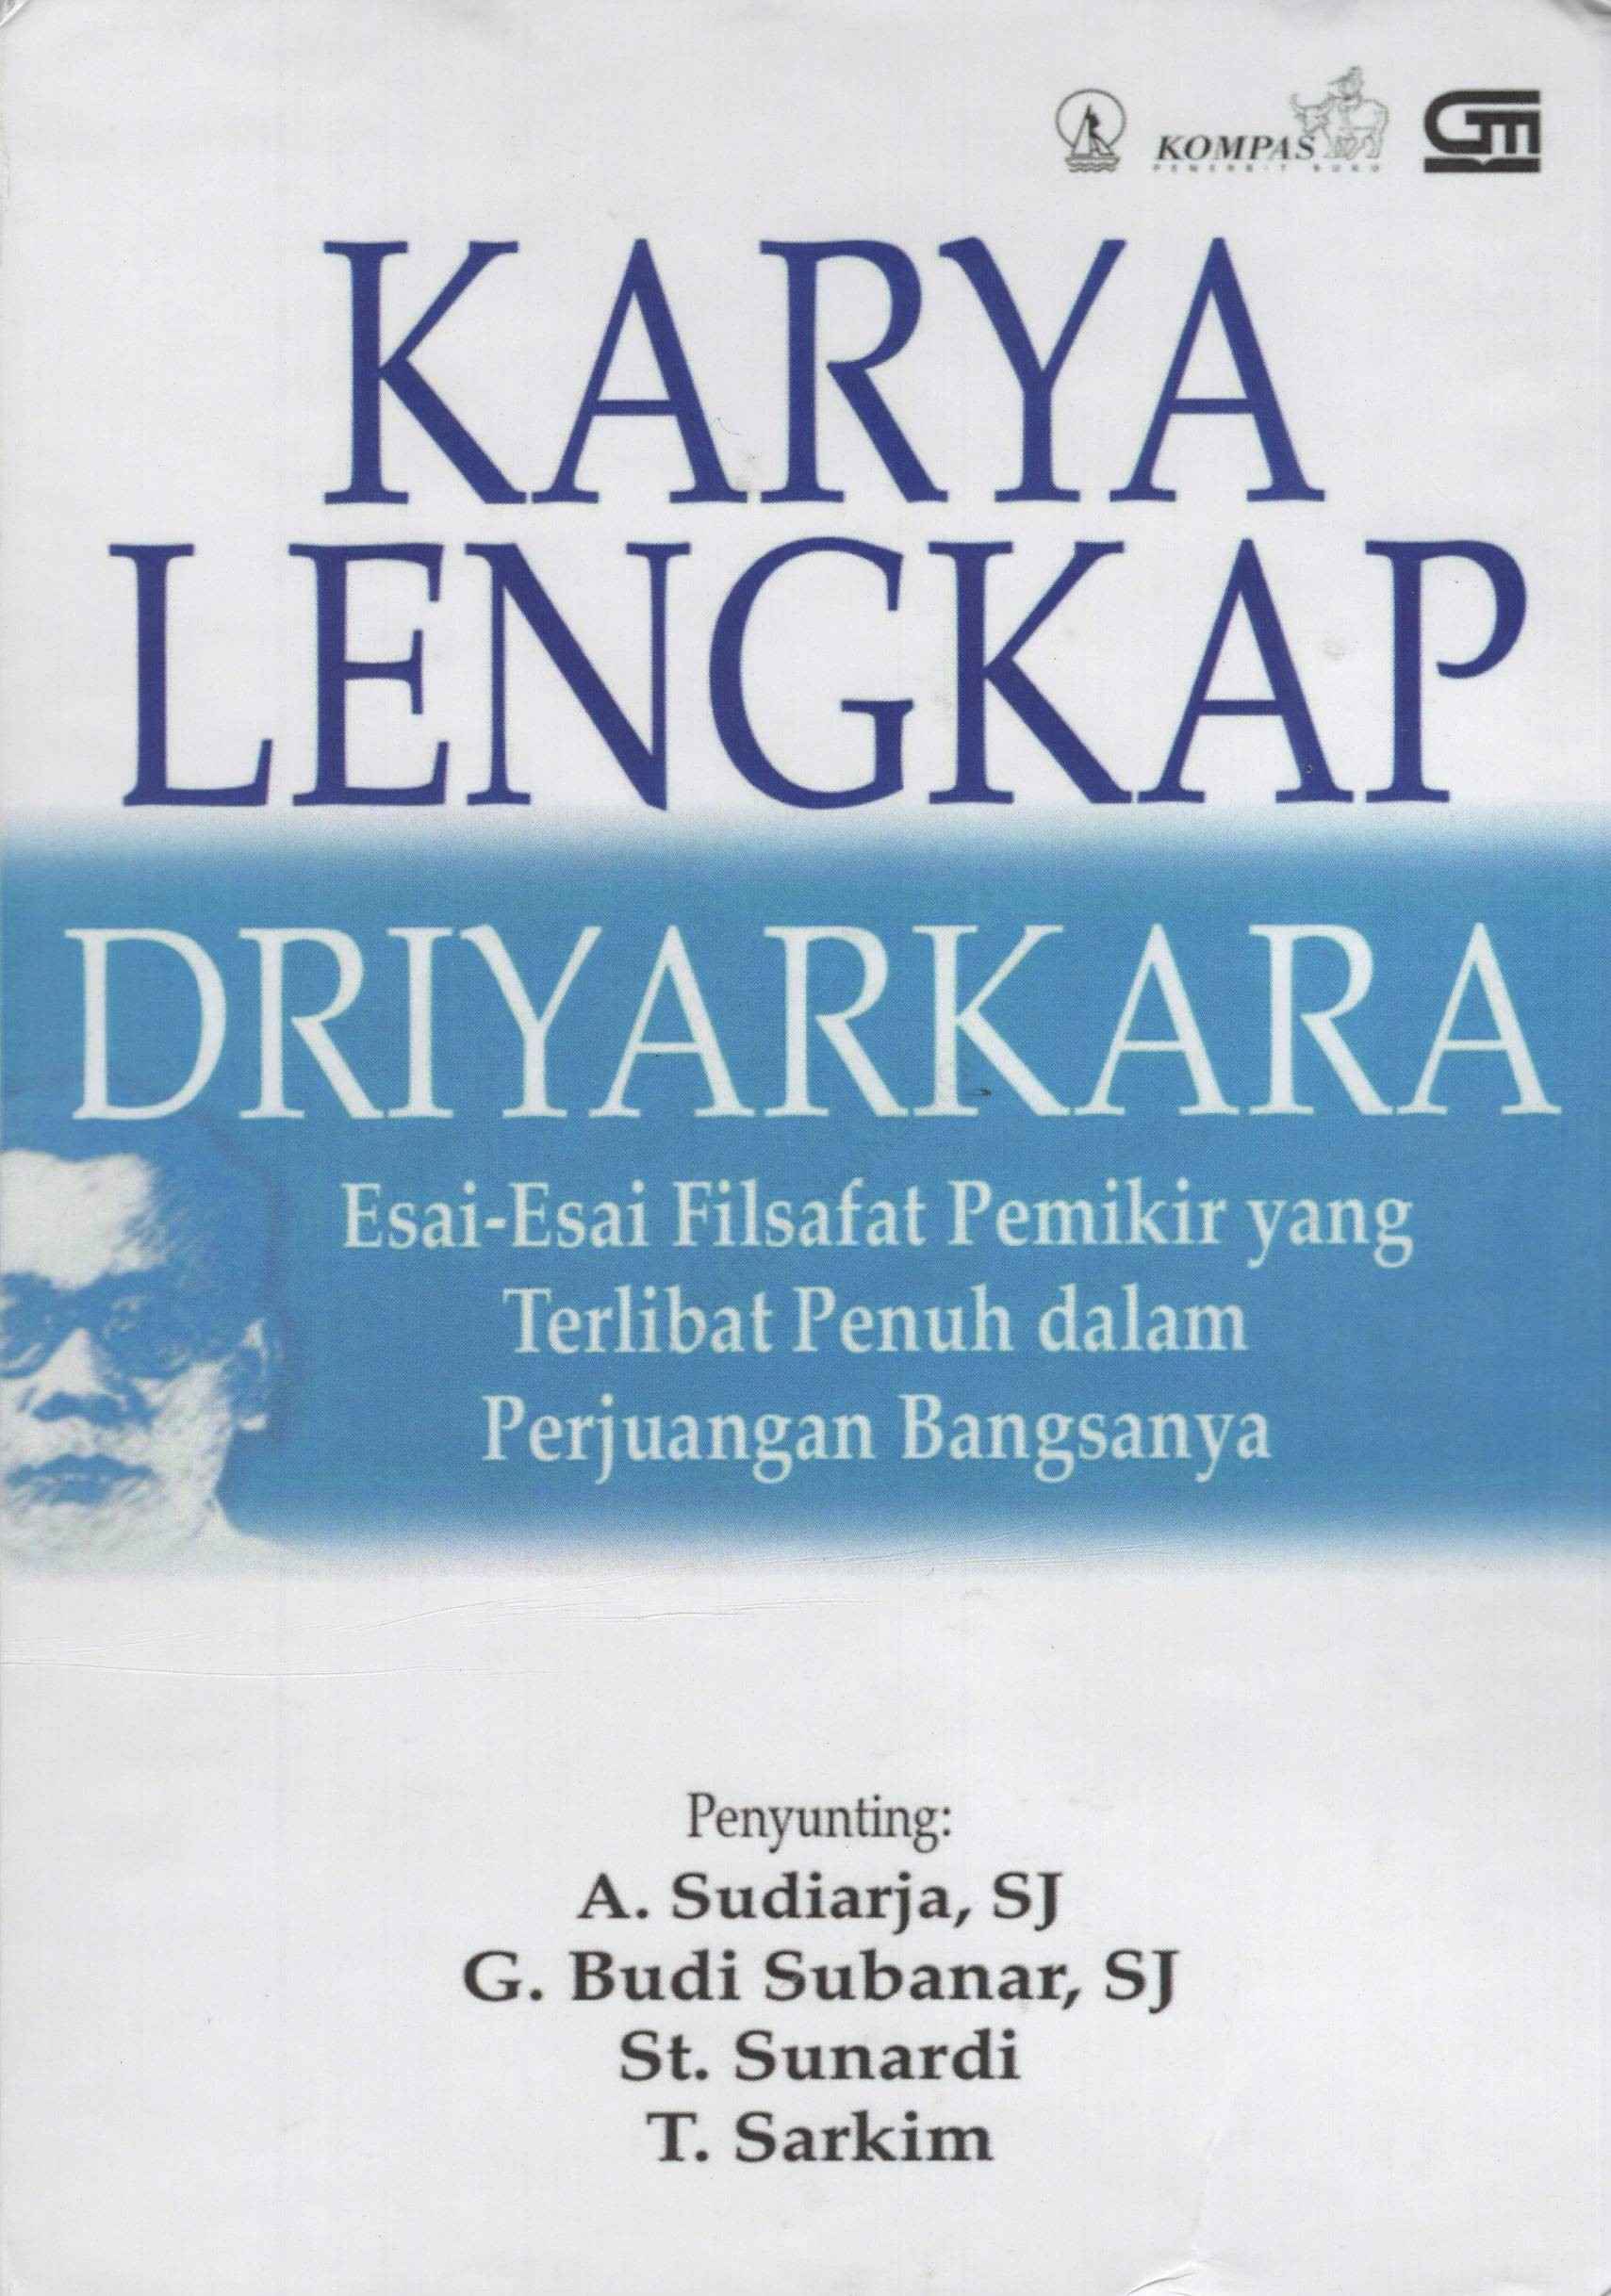 Karya Lengkap Driyarkara : Esai-Esai Filsafat Pemikir yang Terlibat Penuh dalam Perjuangan Bangsanya